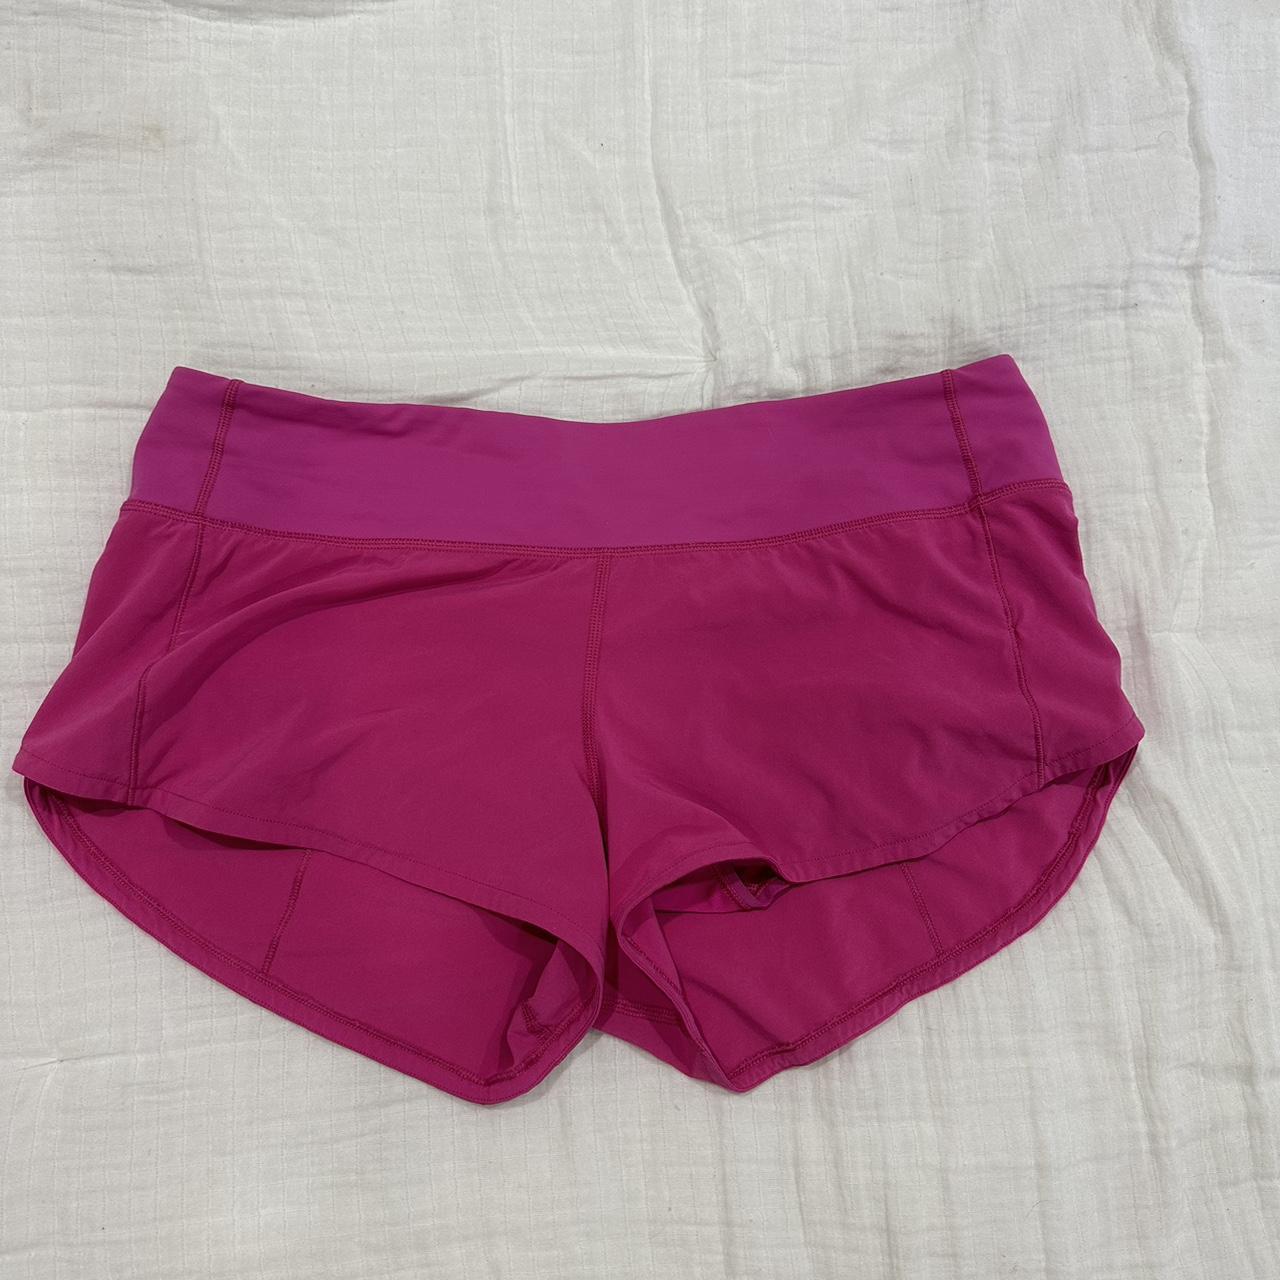 Lululemon Speed Up Shorts 2.5” color - sonic pink - Depop